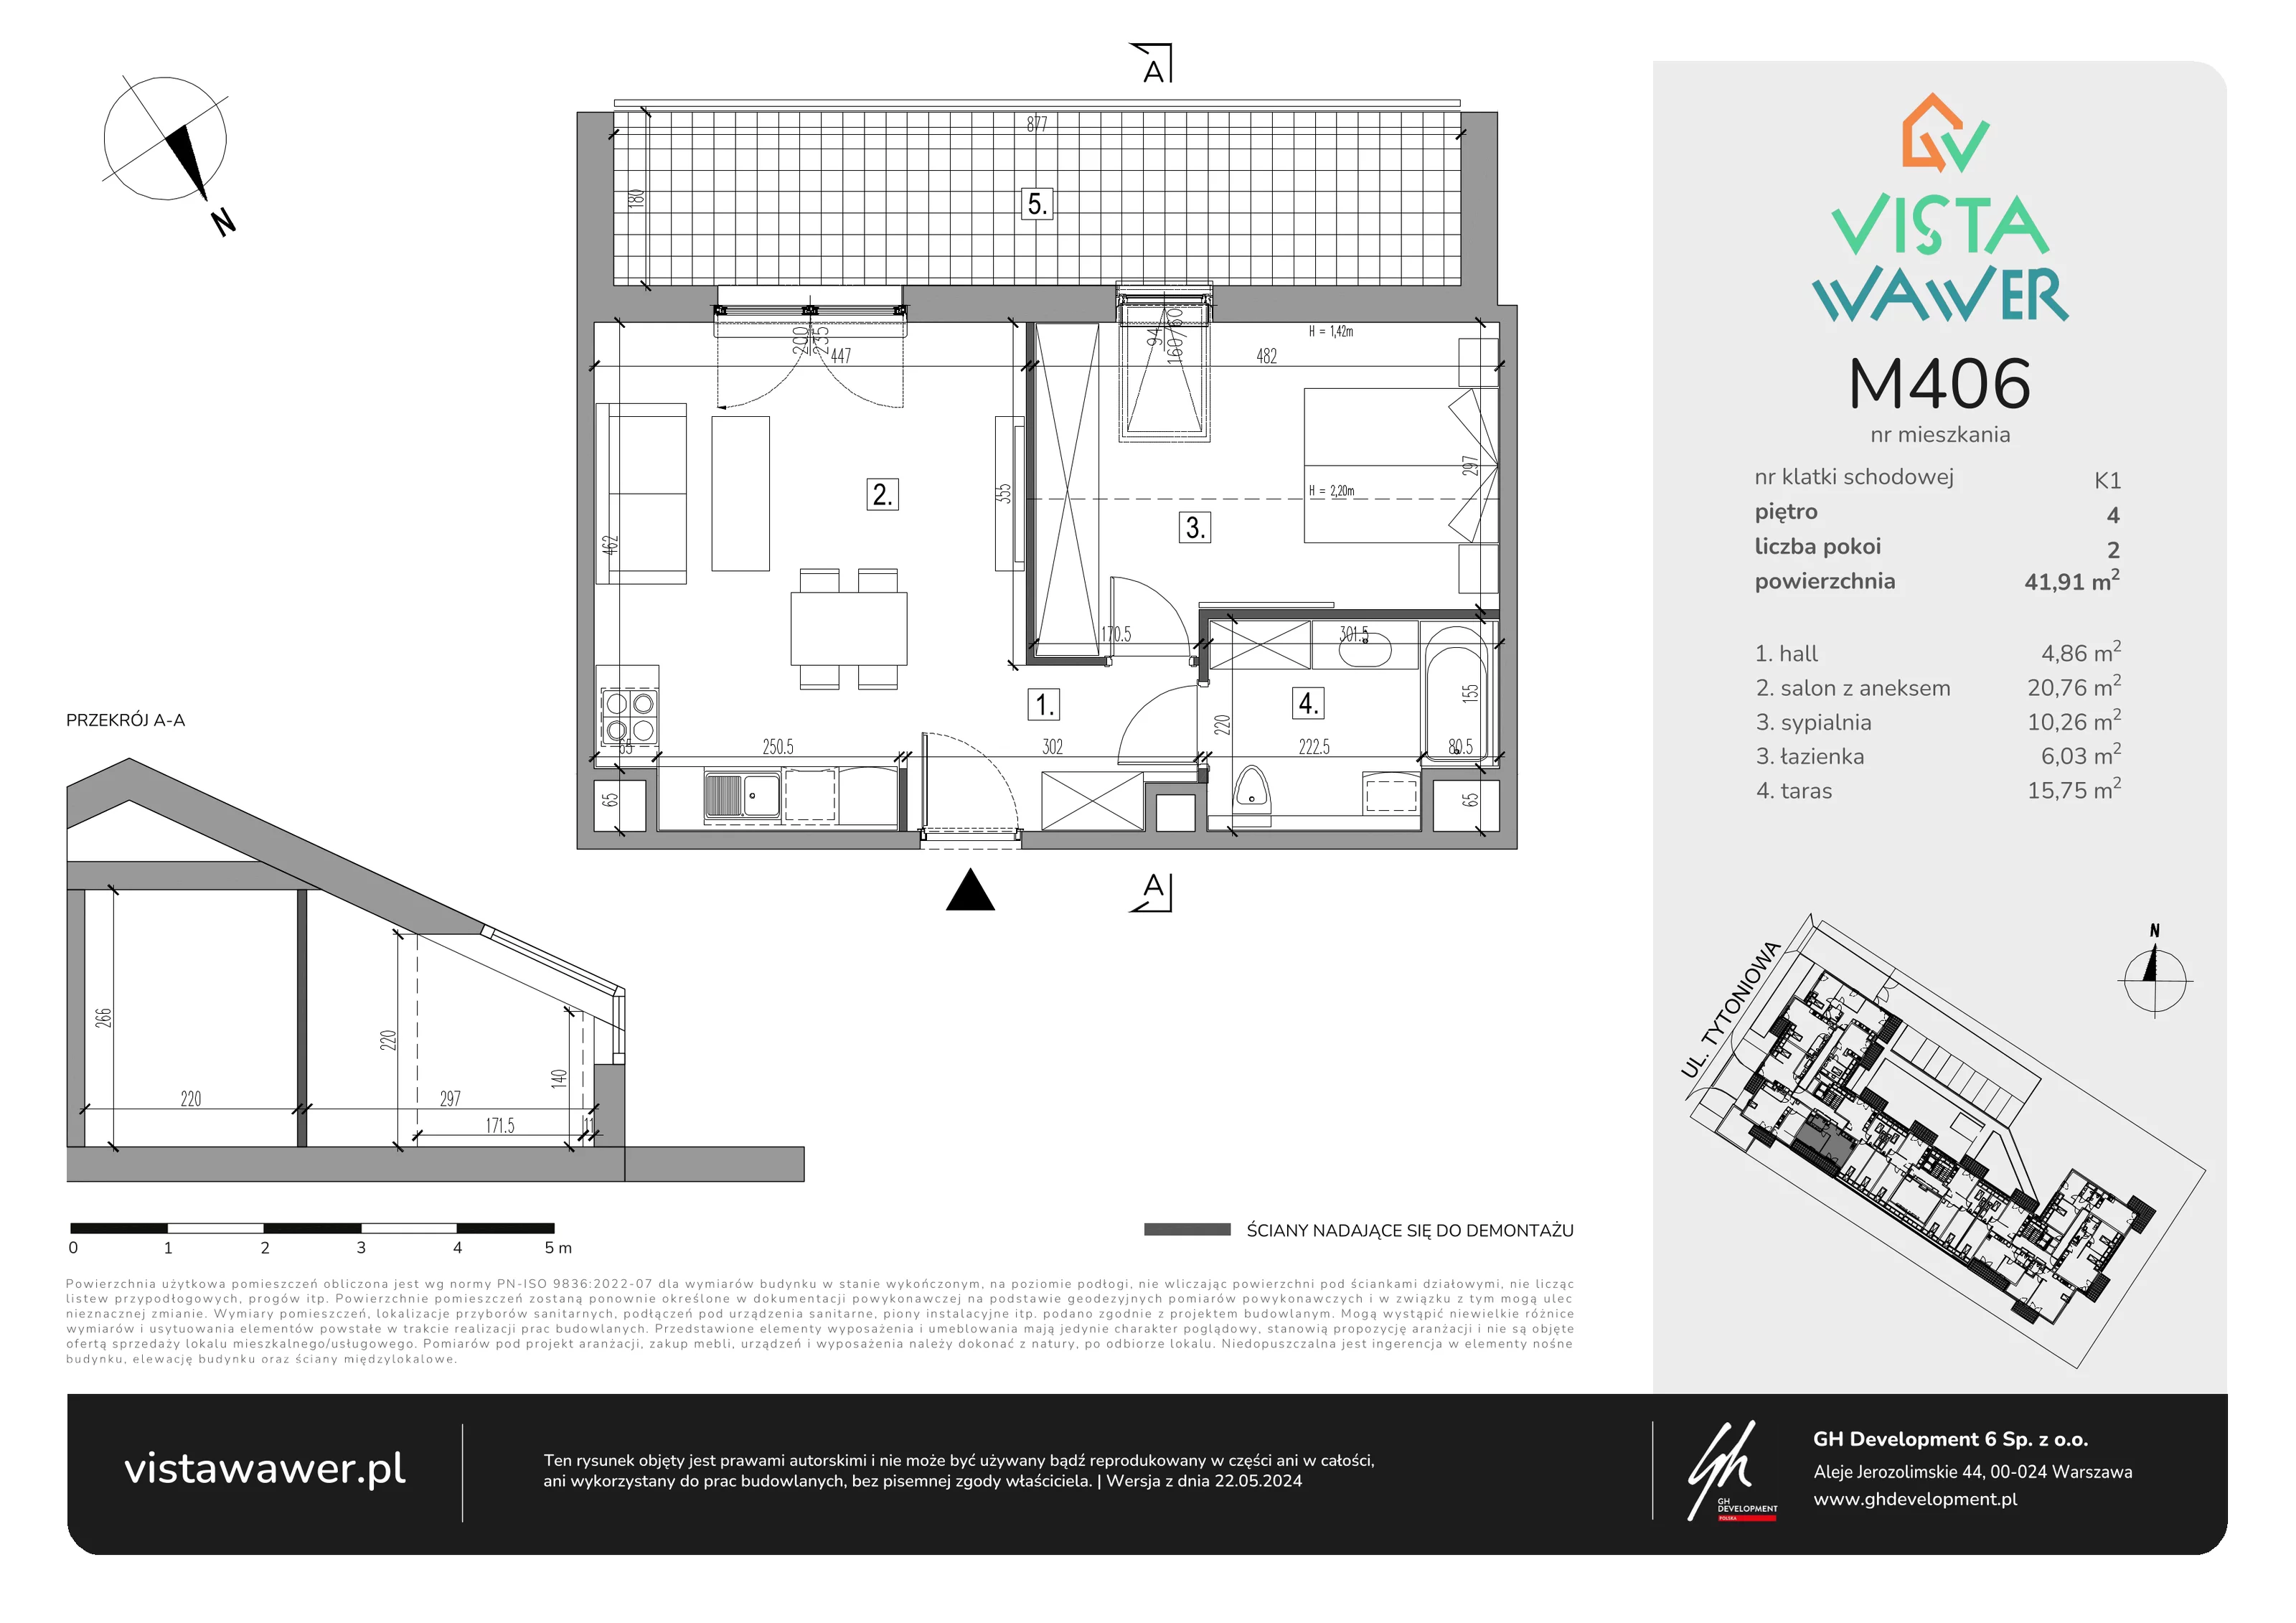 Mieszkanie 41,91 m², piętro 4, oferta nr M406, Vista Wawer, Warszawa, Wawer, Gocławek, ul. Tytoniowa 20